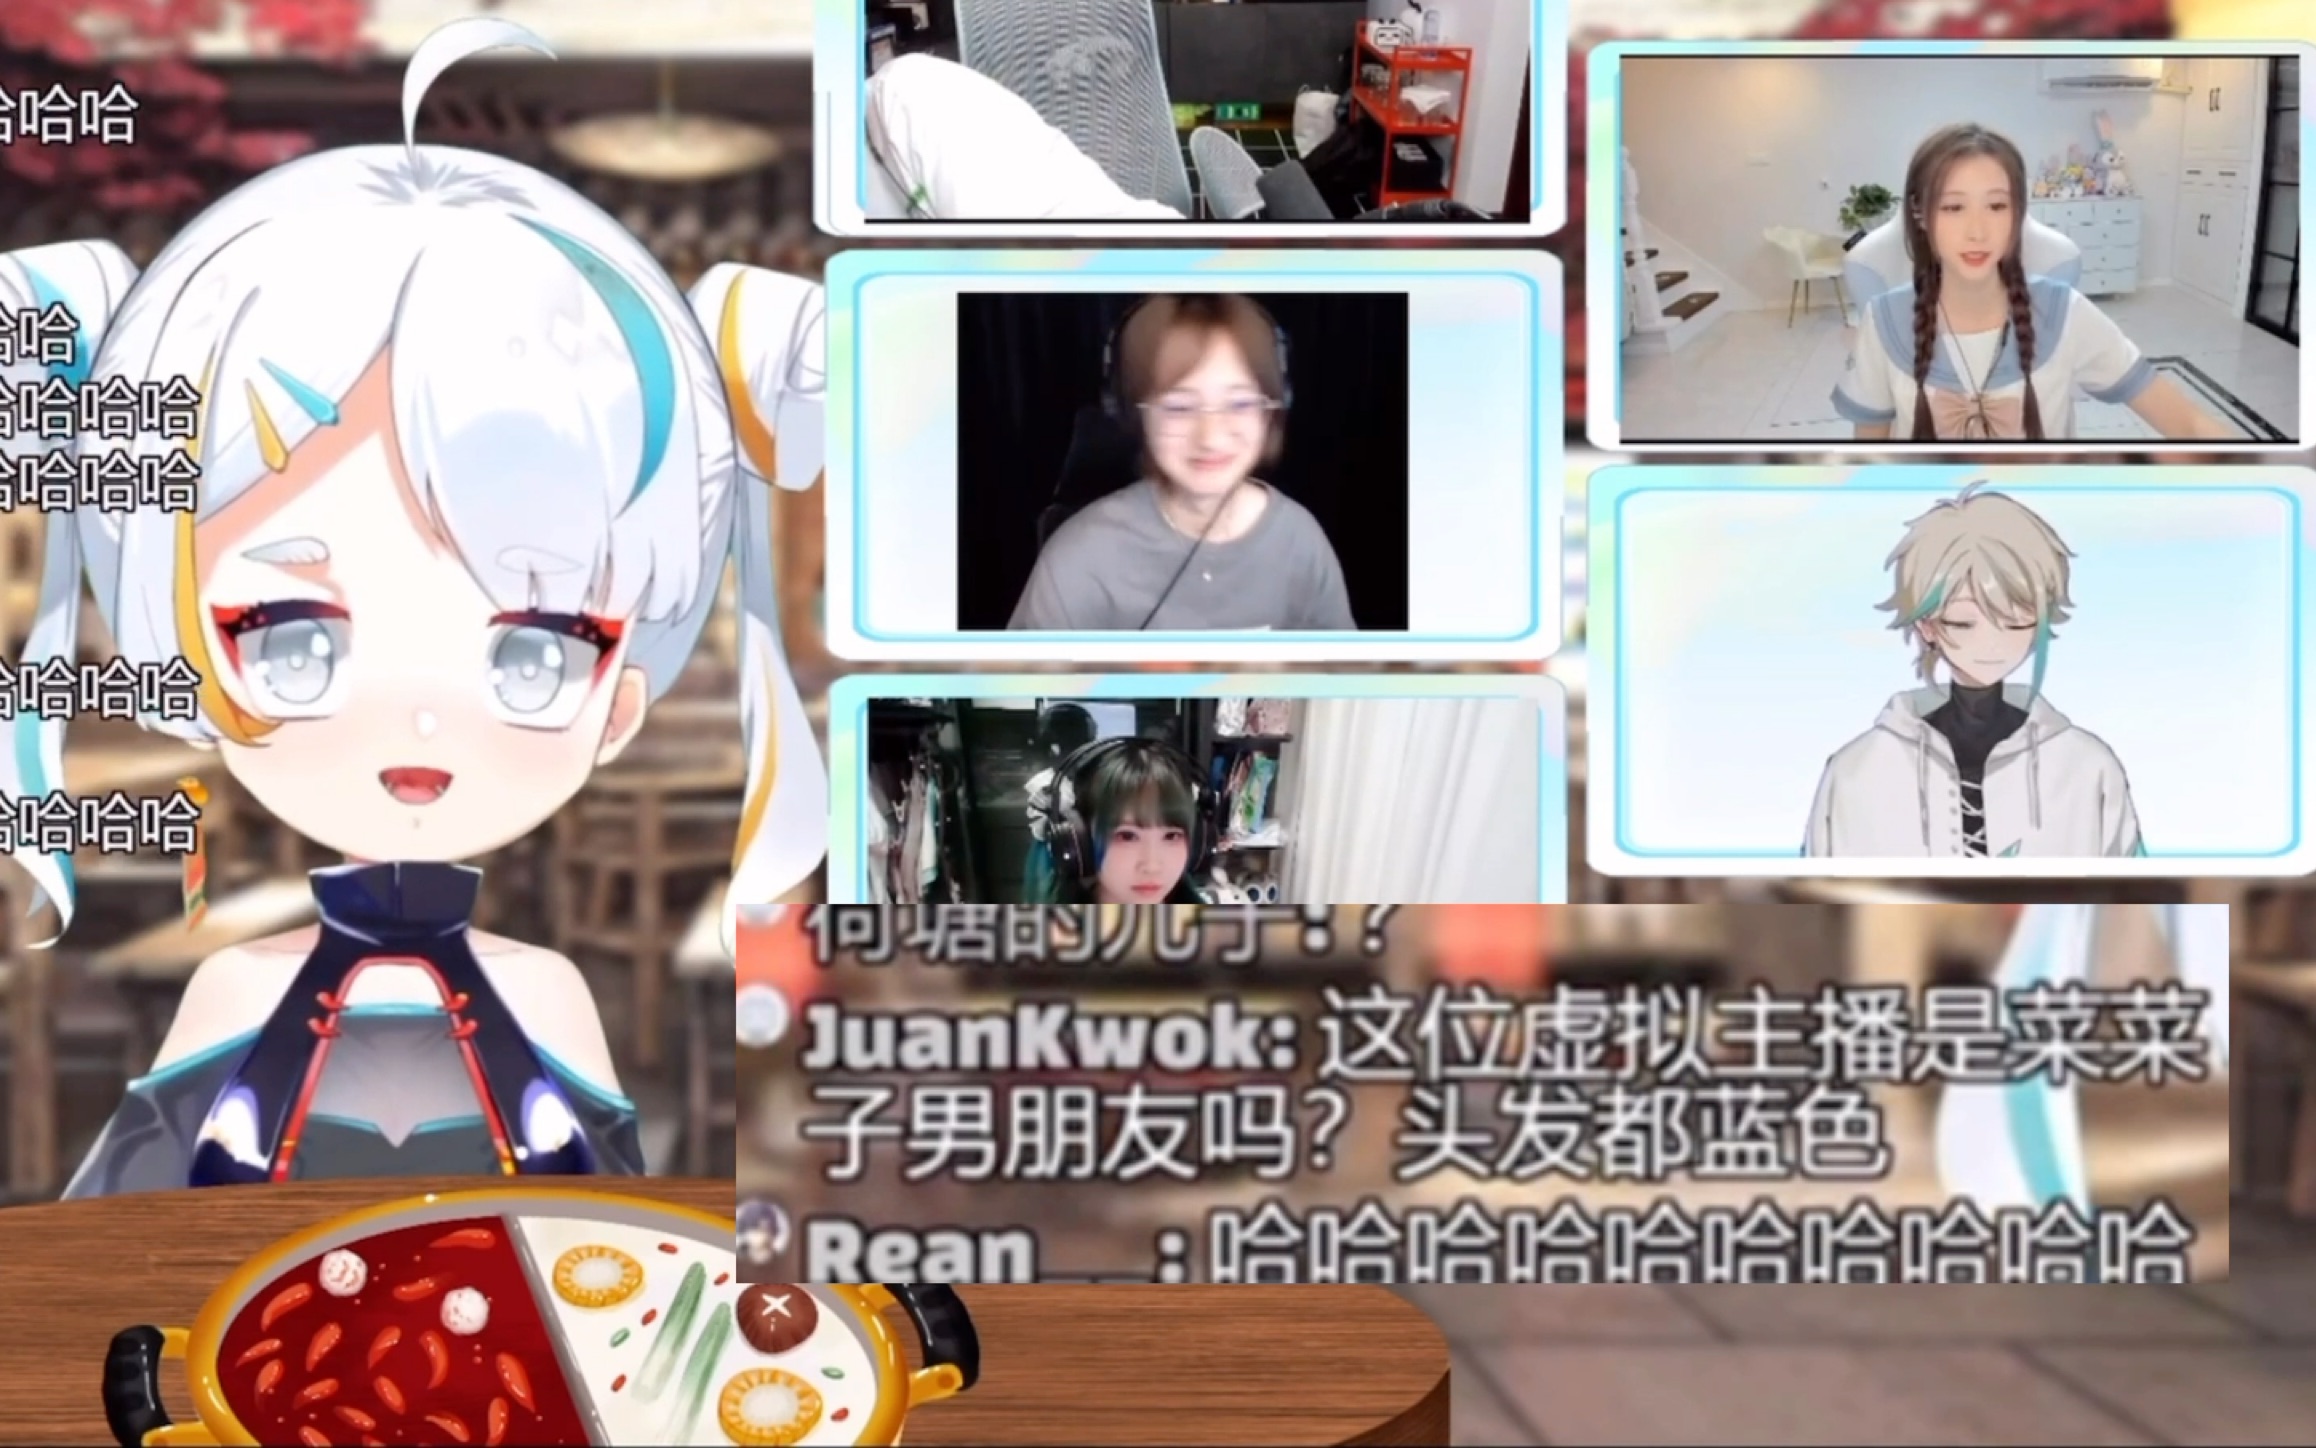 【阿萨aza/菜菜子nanako】这位虚拟主播是菜菜子男朋友吗?